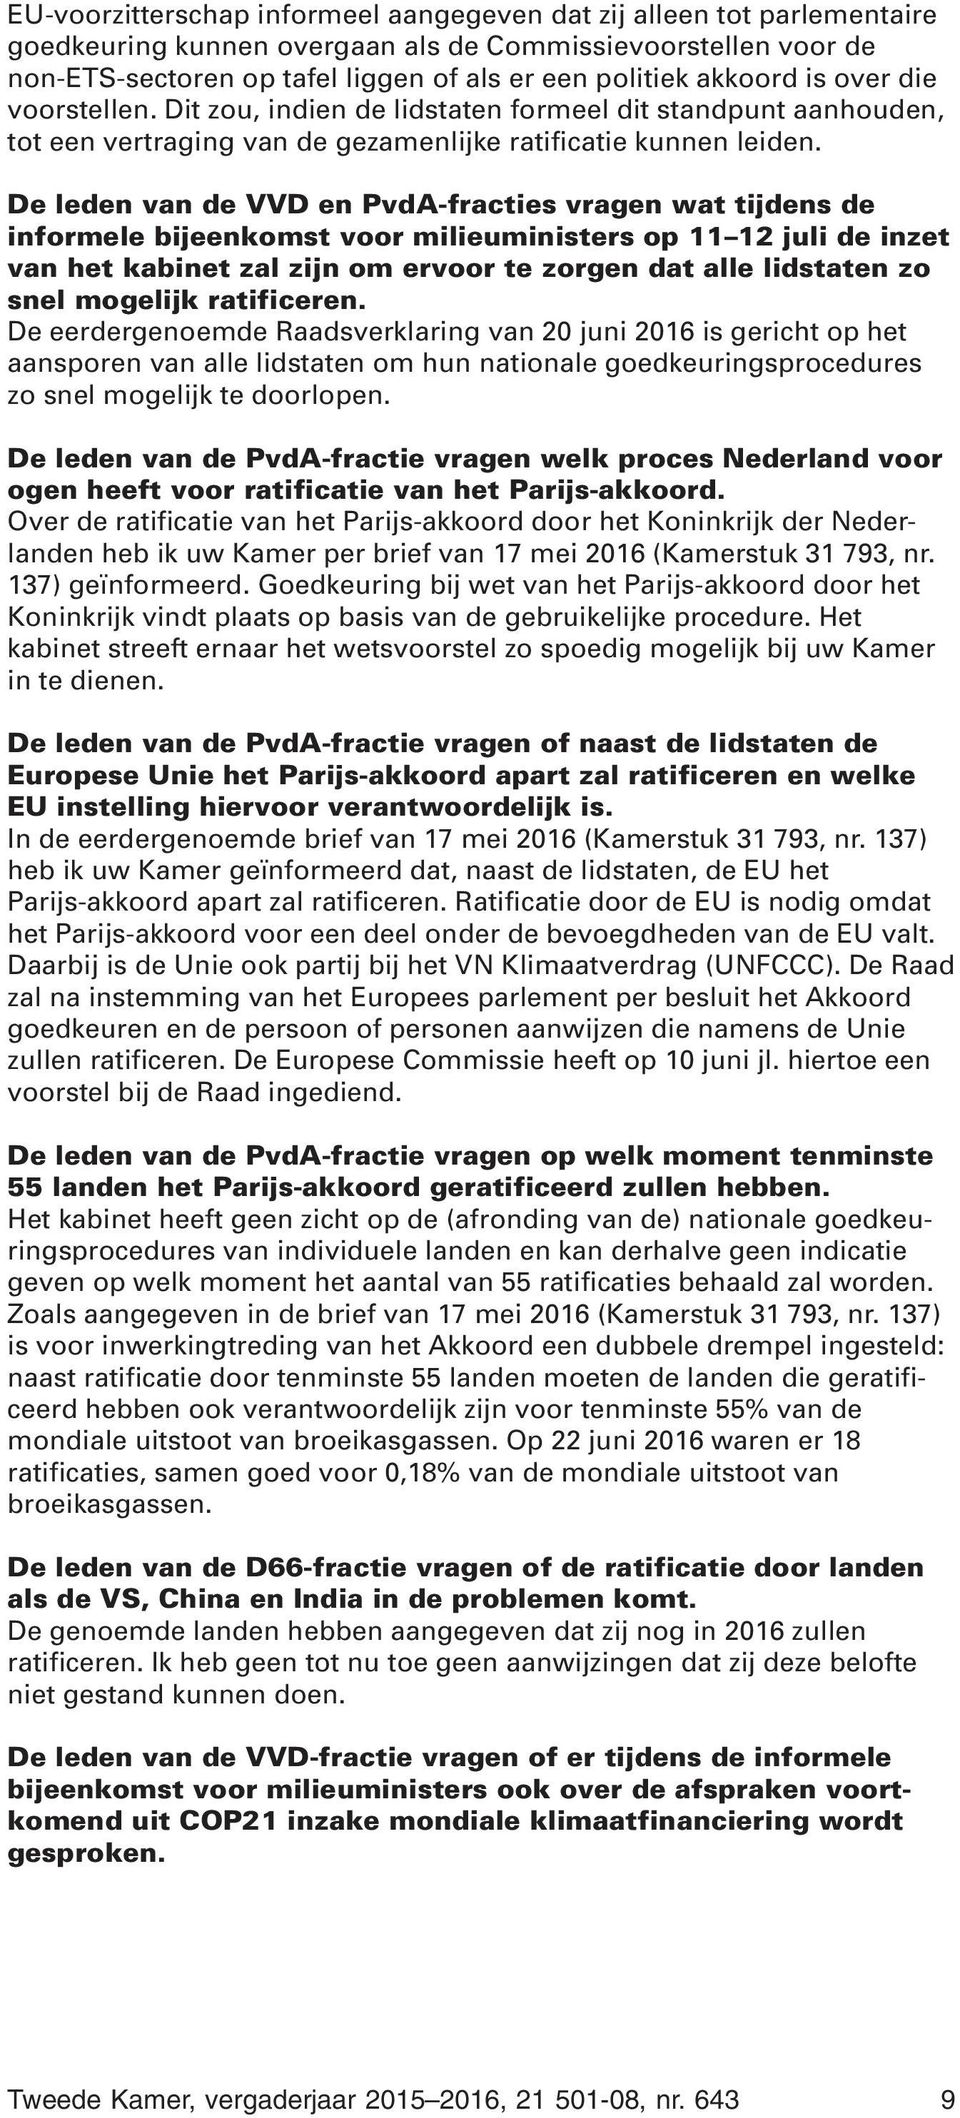 De leden van de VVD en PvdA-fracties vragen wat tijdens de informele bijeenkomst voor milieuministers op 11 12 juli de inzet van het kabinet zal zijn om ervoor te zorgen dat alle lidstaten zo snel